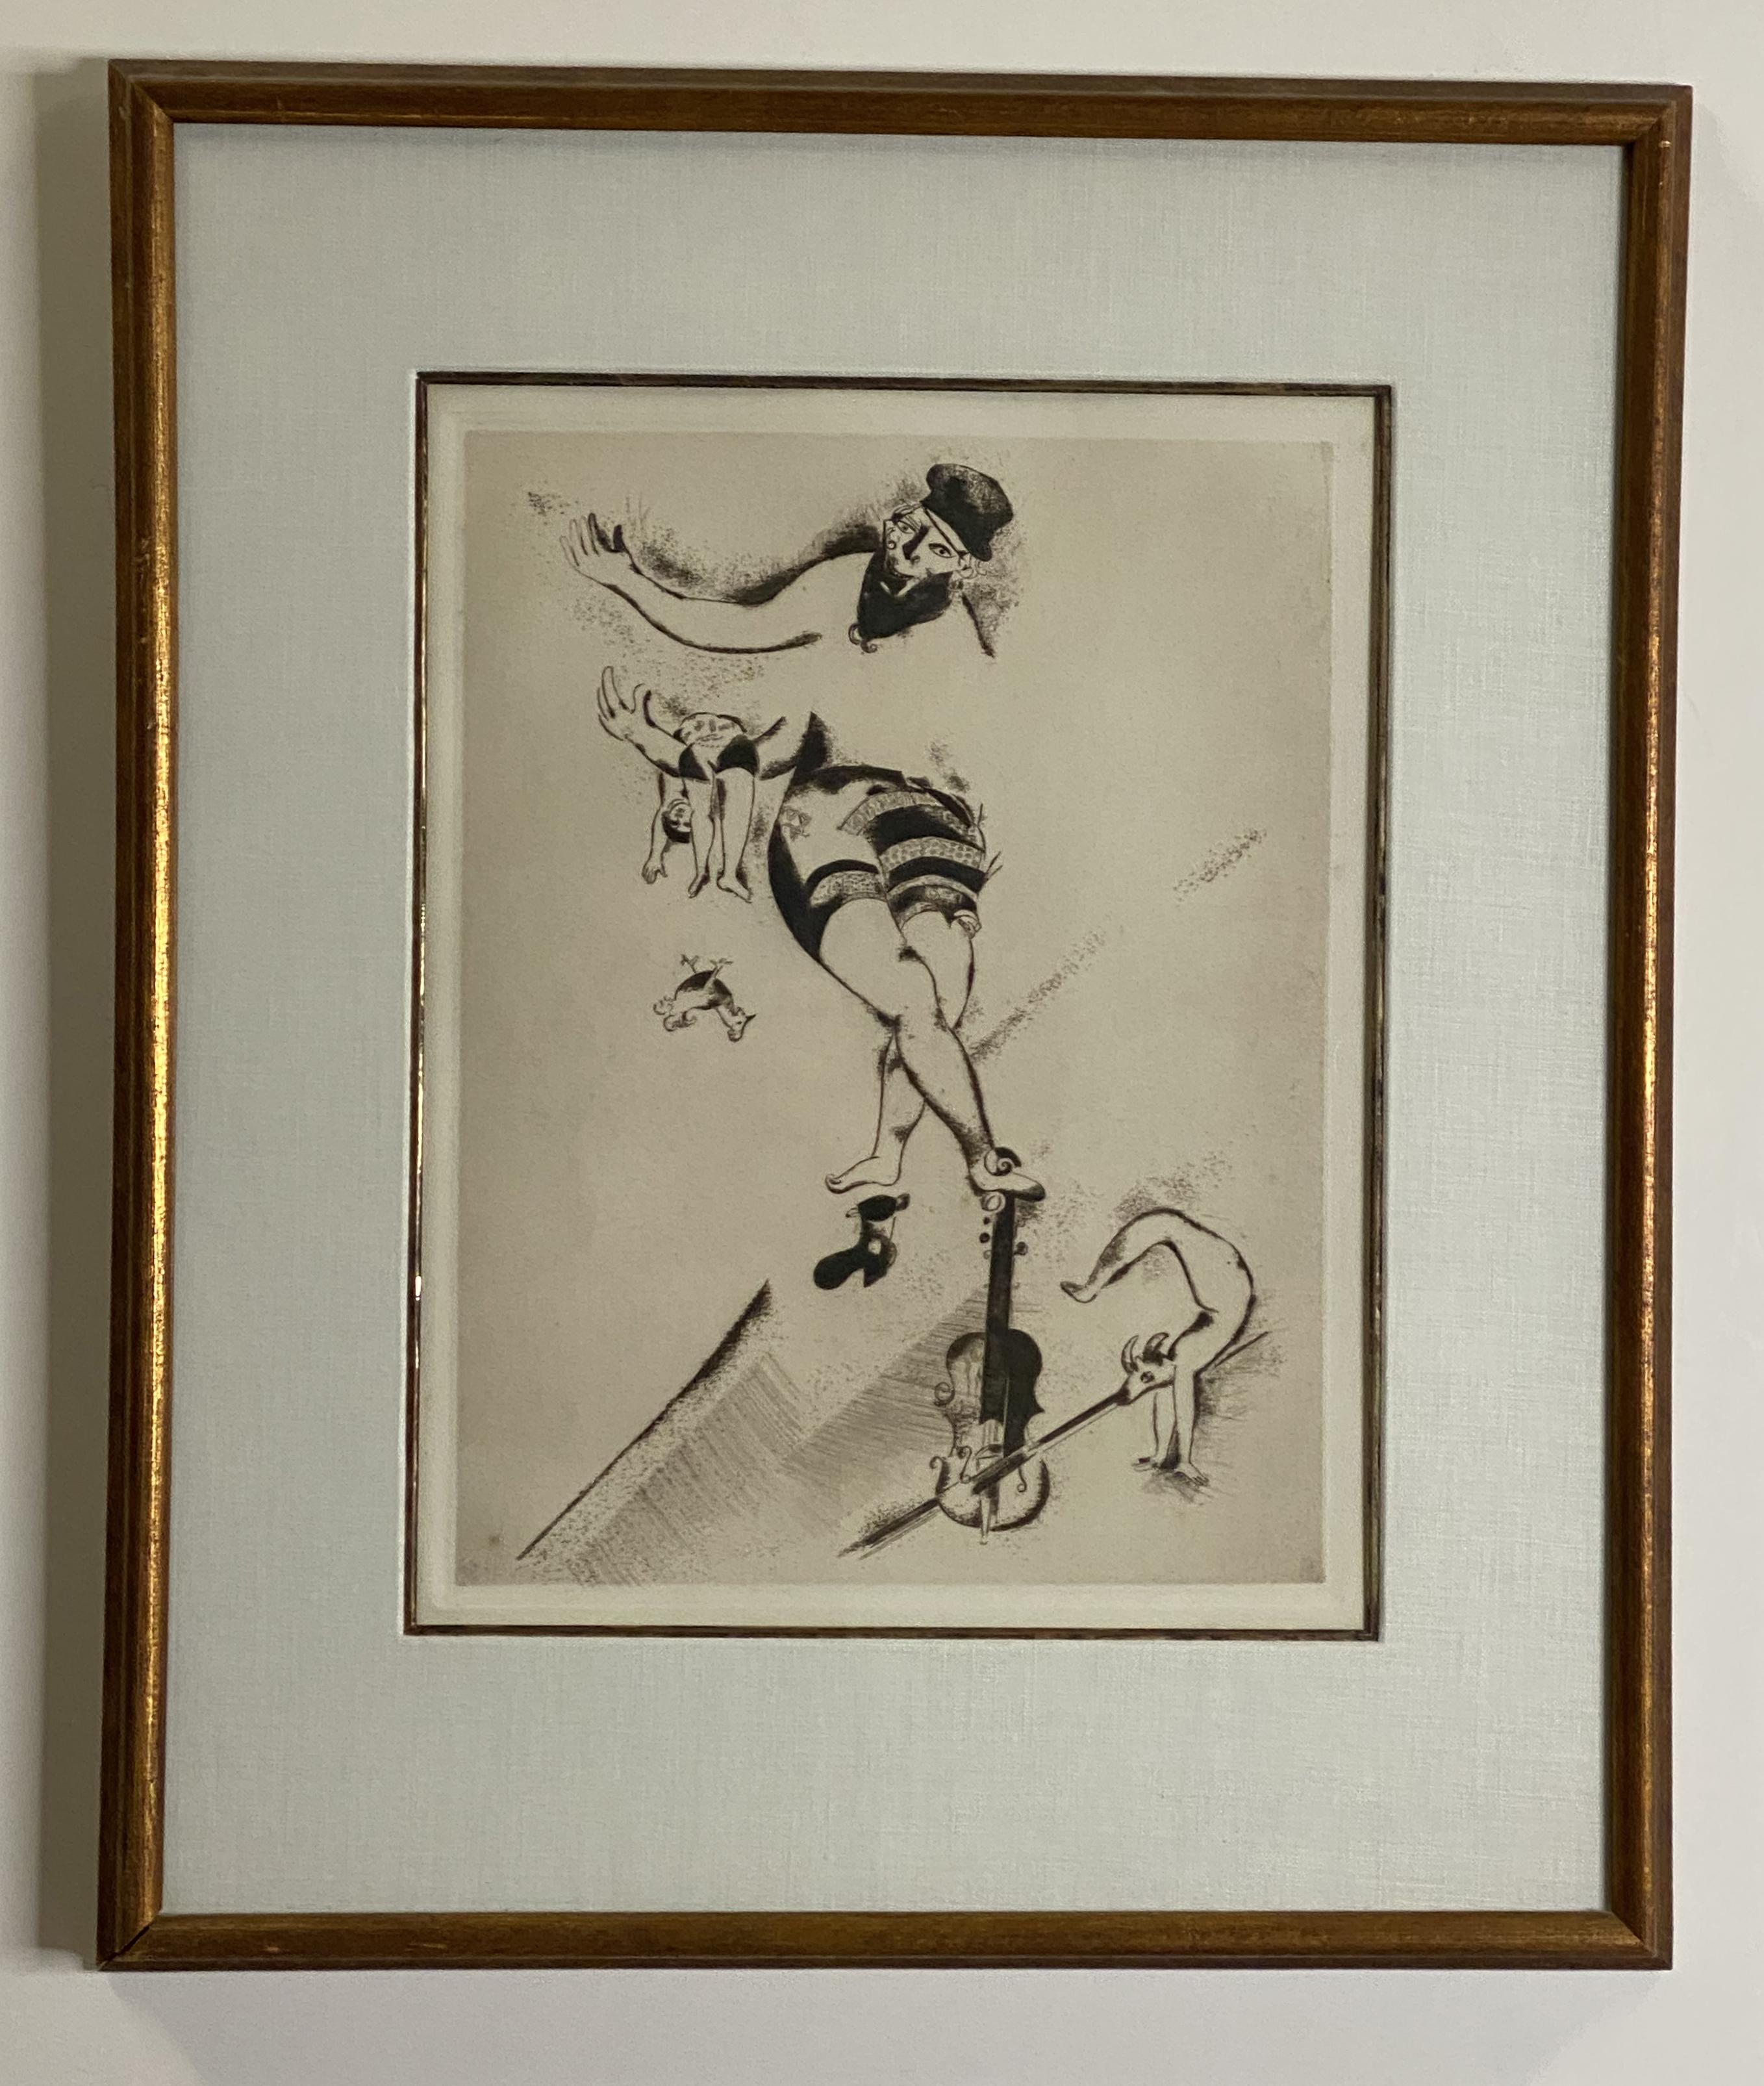 Künstler: Marc Chagall
Titel: L' acrobate au violin (Akrobat mit Geige)
Jahr: 1924
Medium: Radierung mit Kaltnadel, auf Velin, vollrandig
Größe: 33